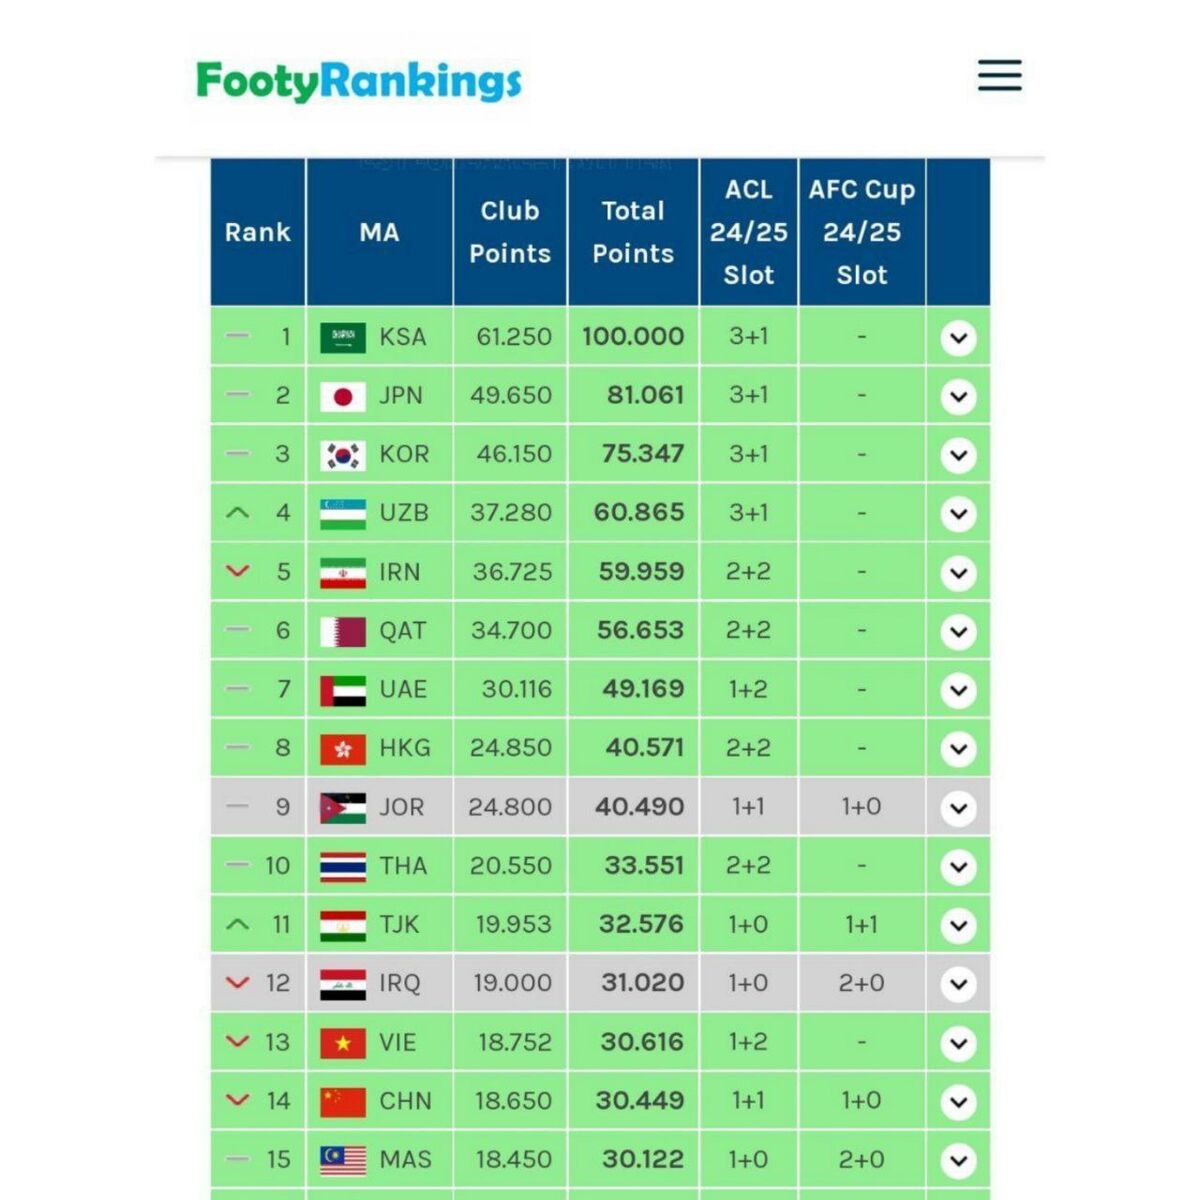 سقوط دوباره ایران و کسب سهمیه ۲+۲/ ازبکستان مجددا به رتبه چهارم رسید